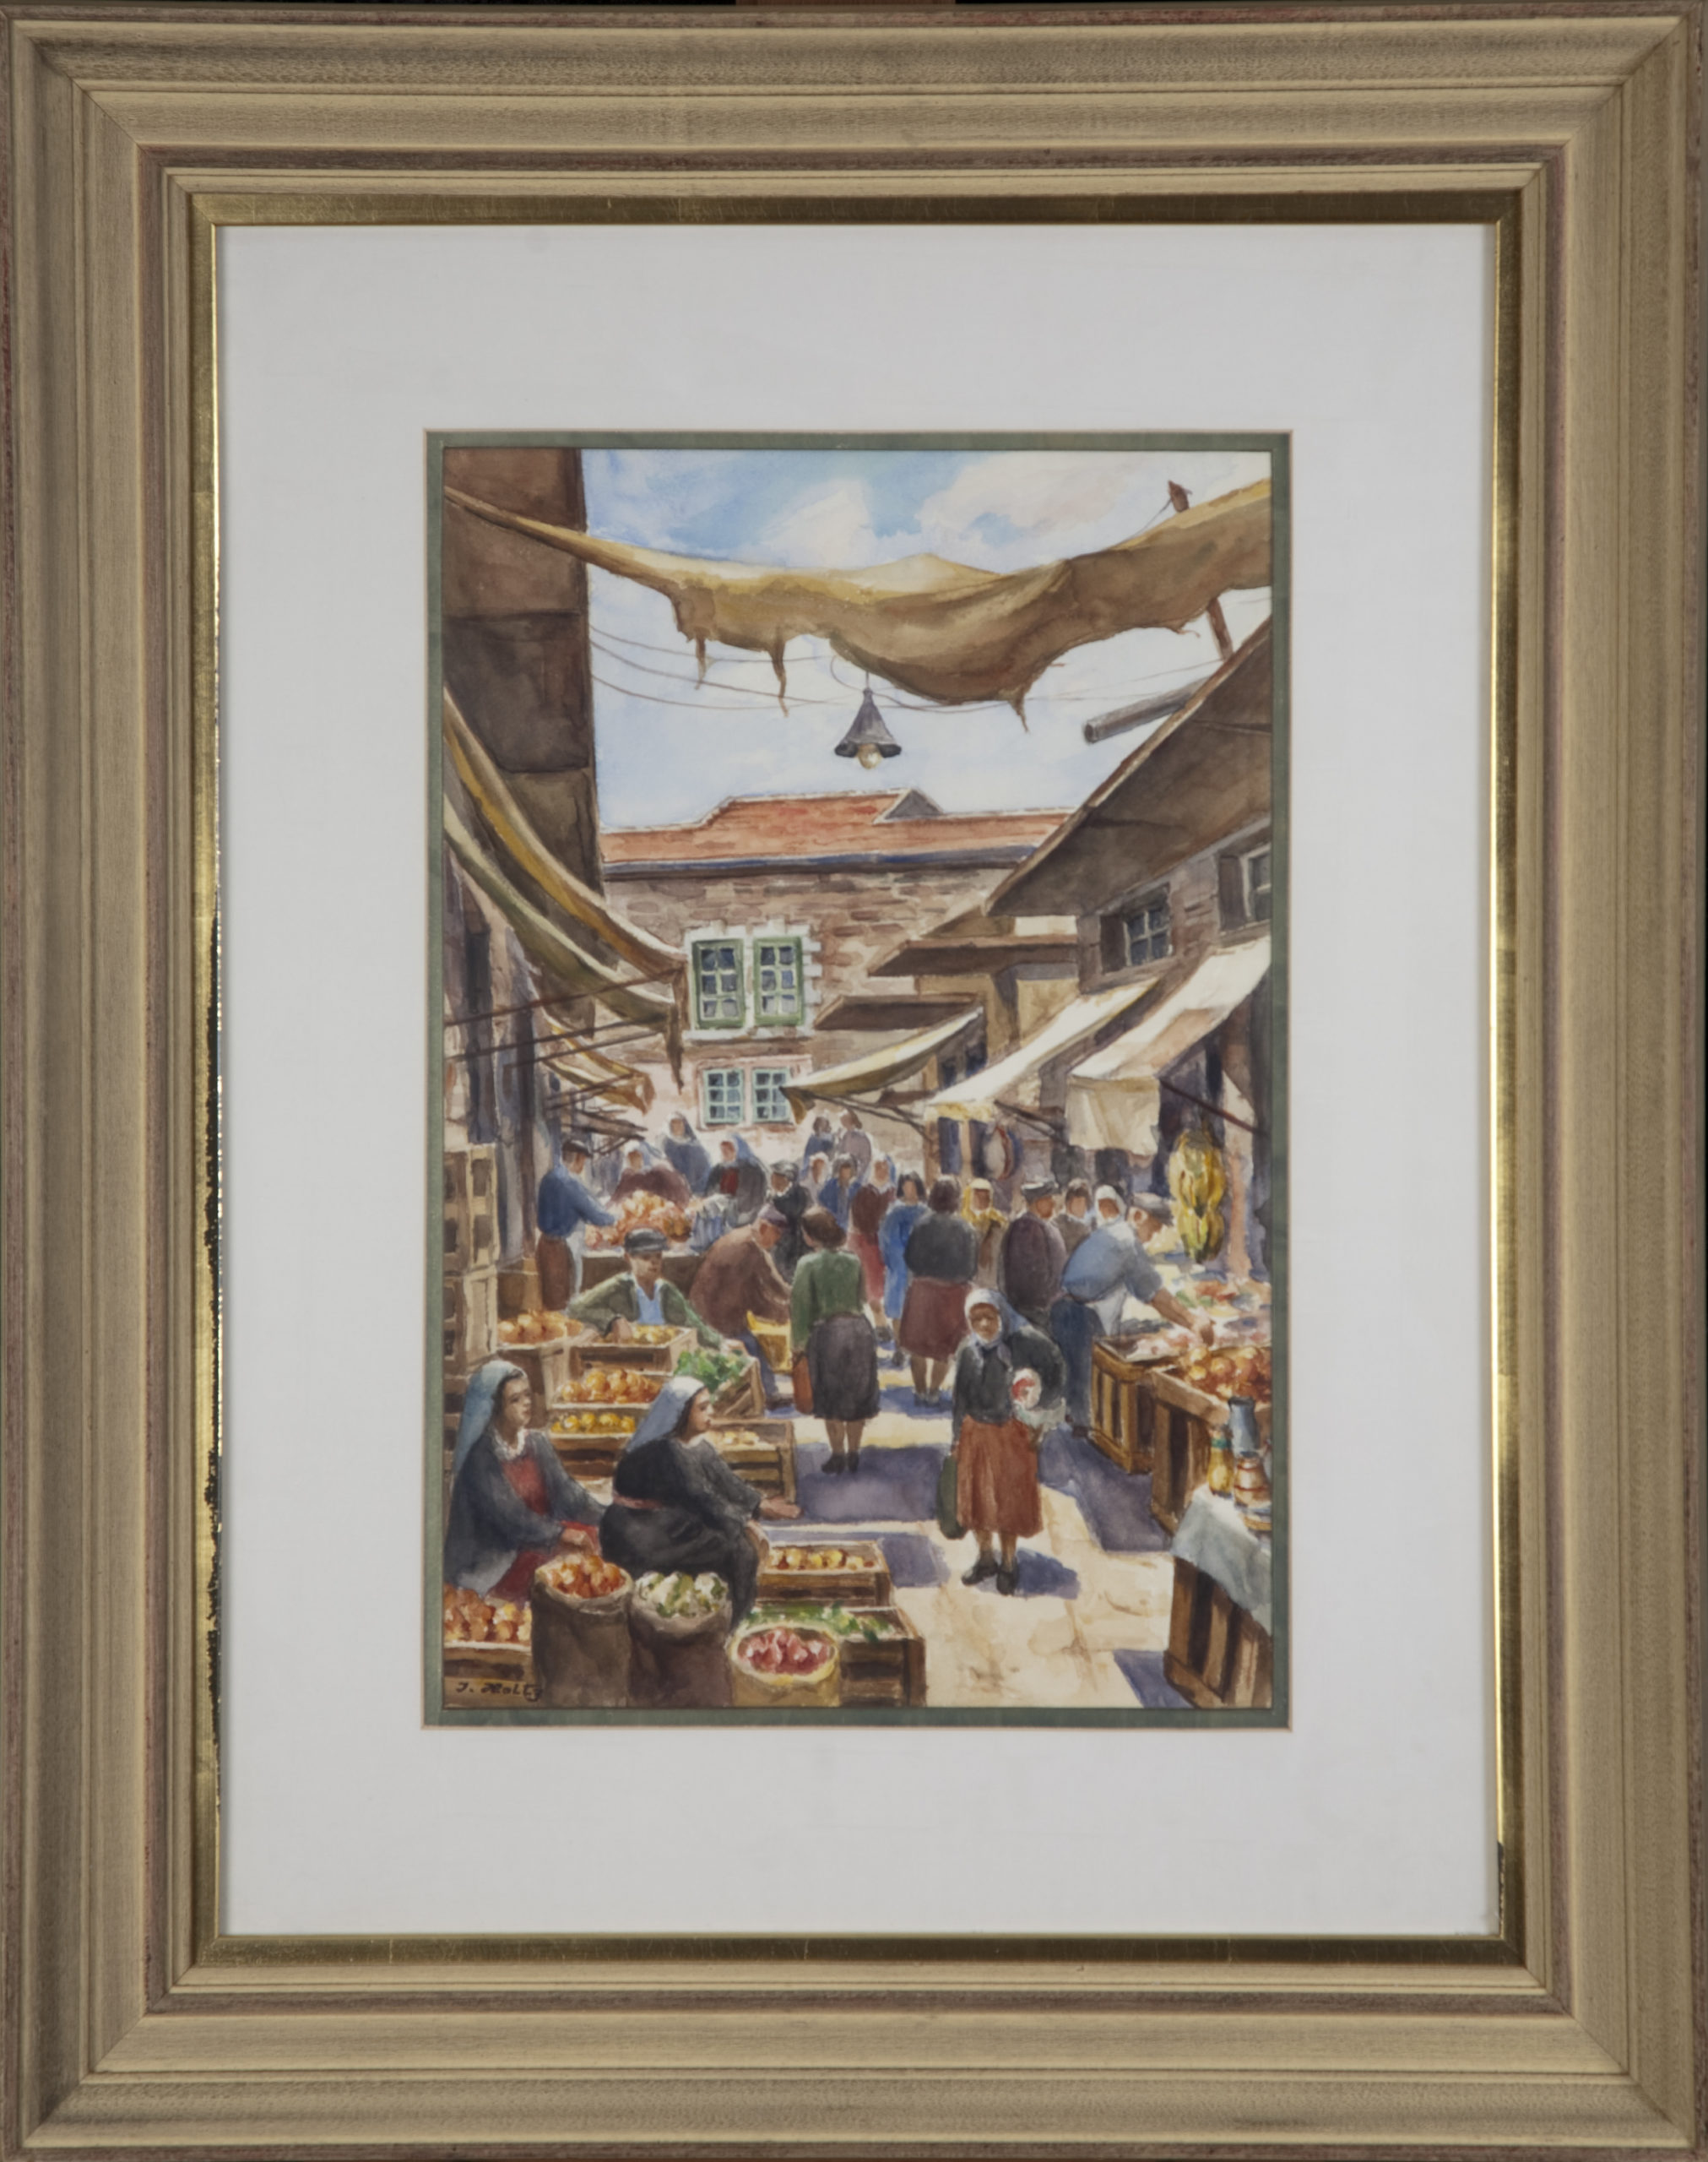 247 Market in Jerusalem 1960 - Watercolor - 12 x 18 - Frame: 23.25 x 29.5 x 2.25